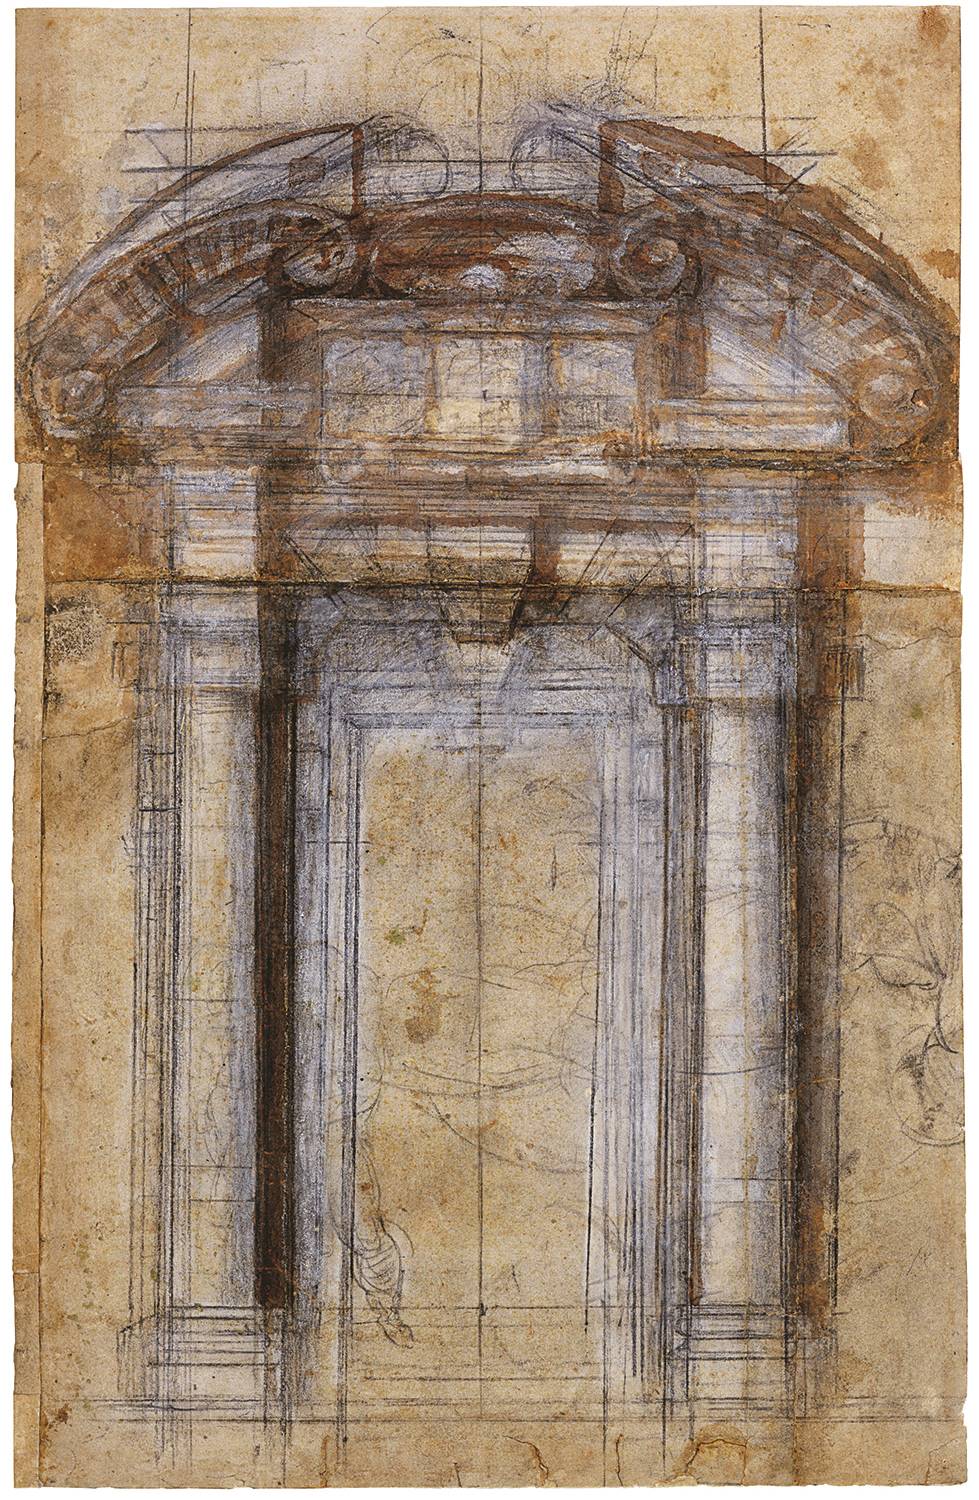 Miguel Ángel, estudio de Porta Pia, 1560.